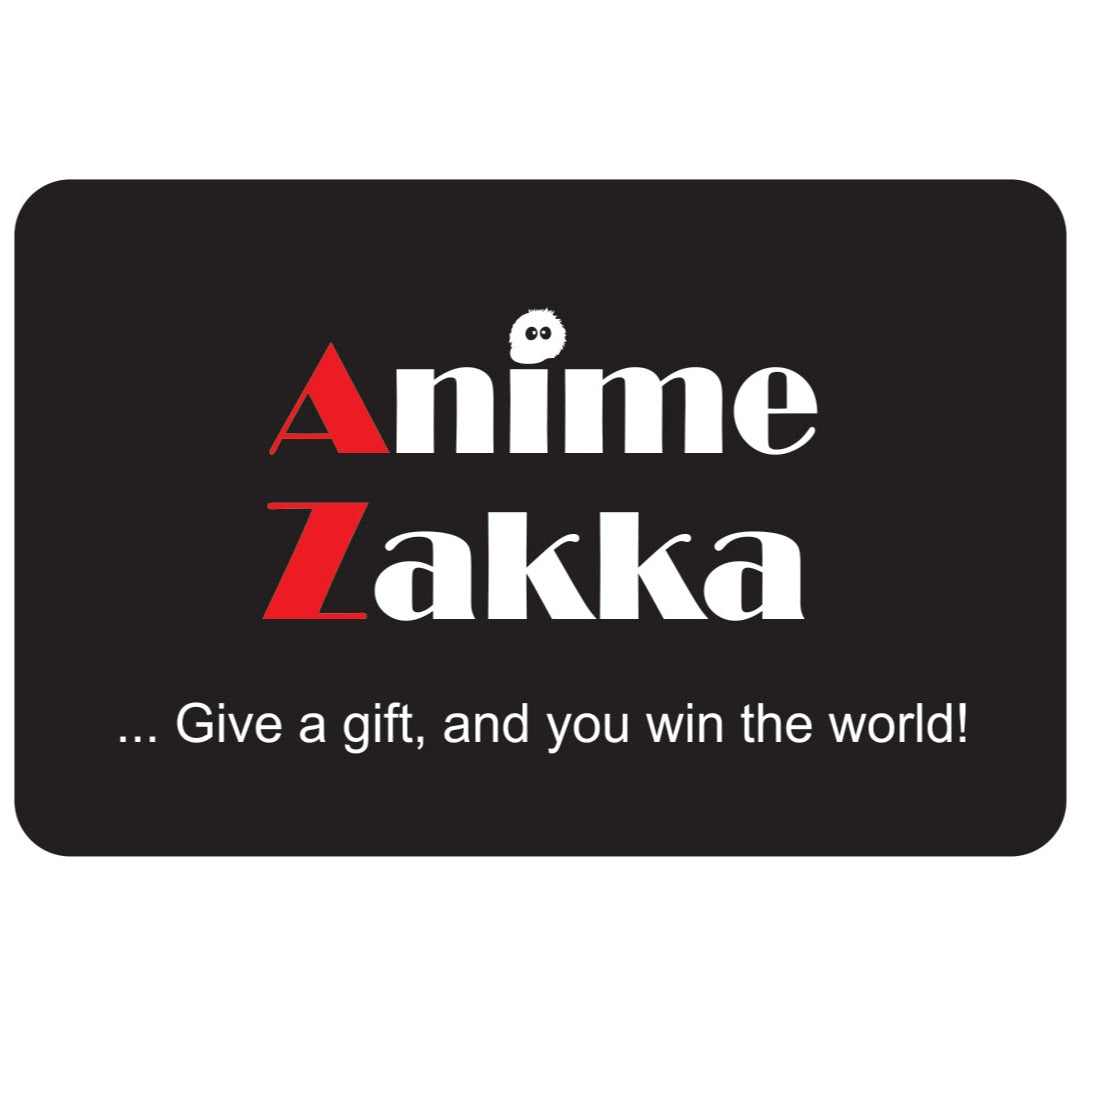 Anime Zakka Gift card